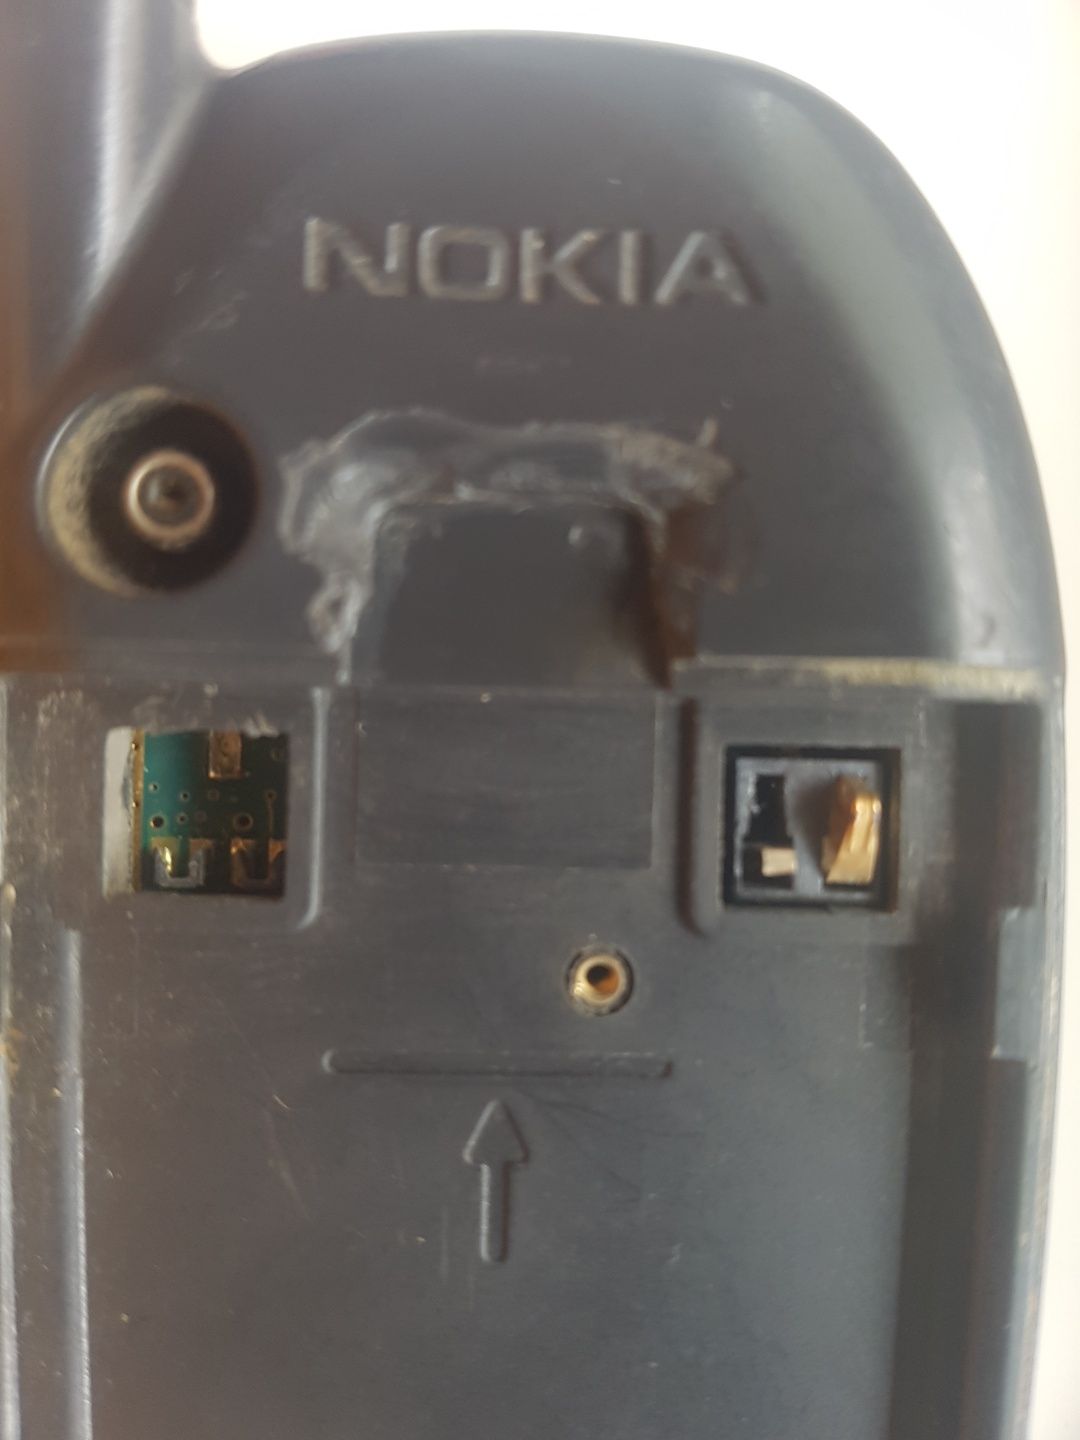 Nokia 6120, defect